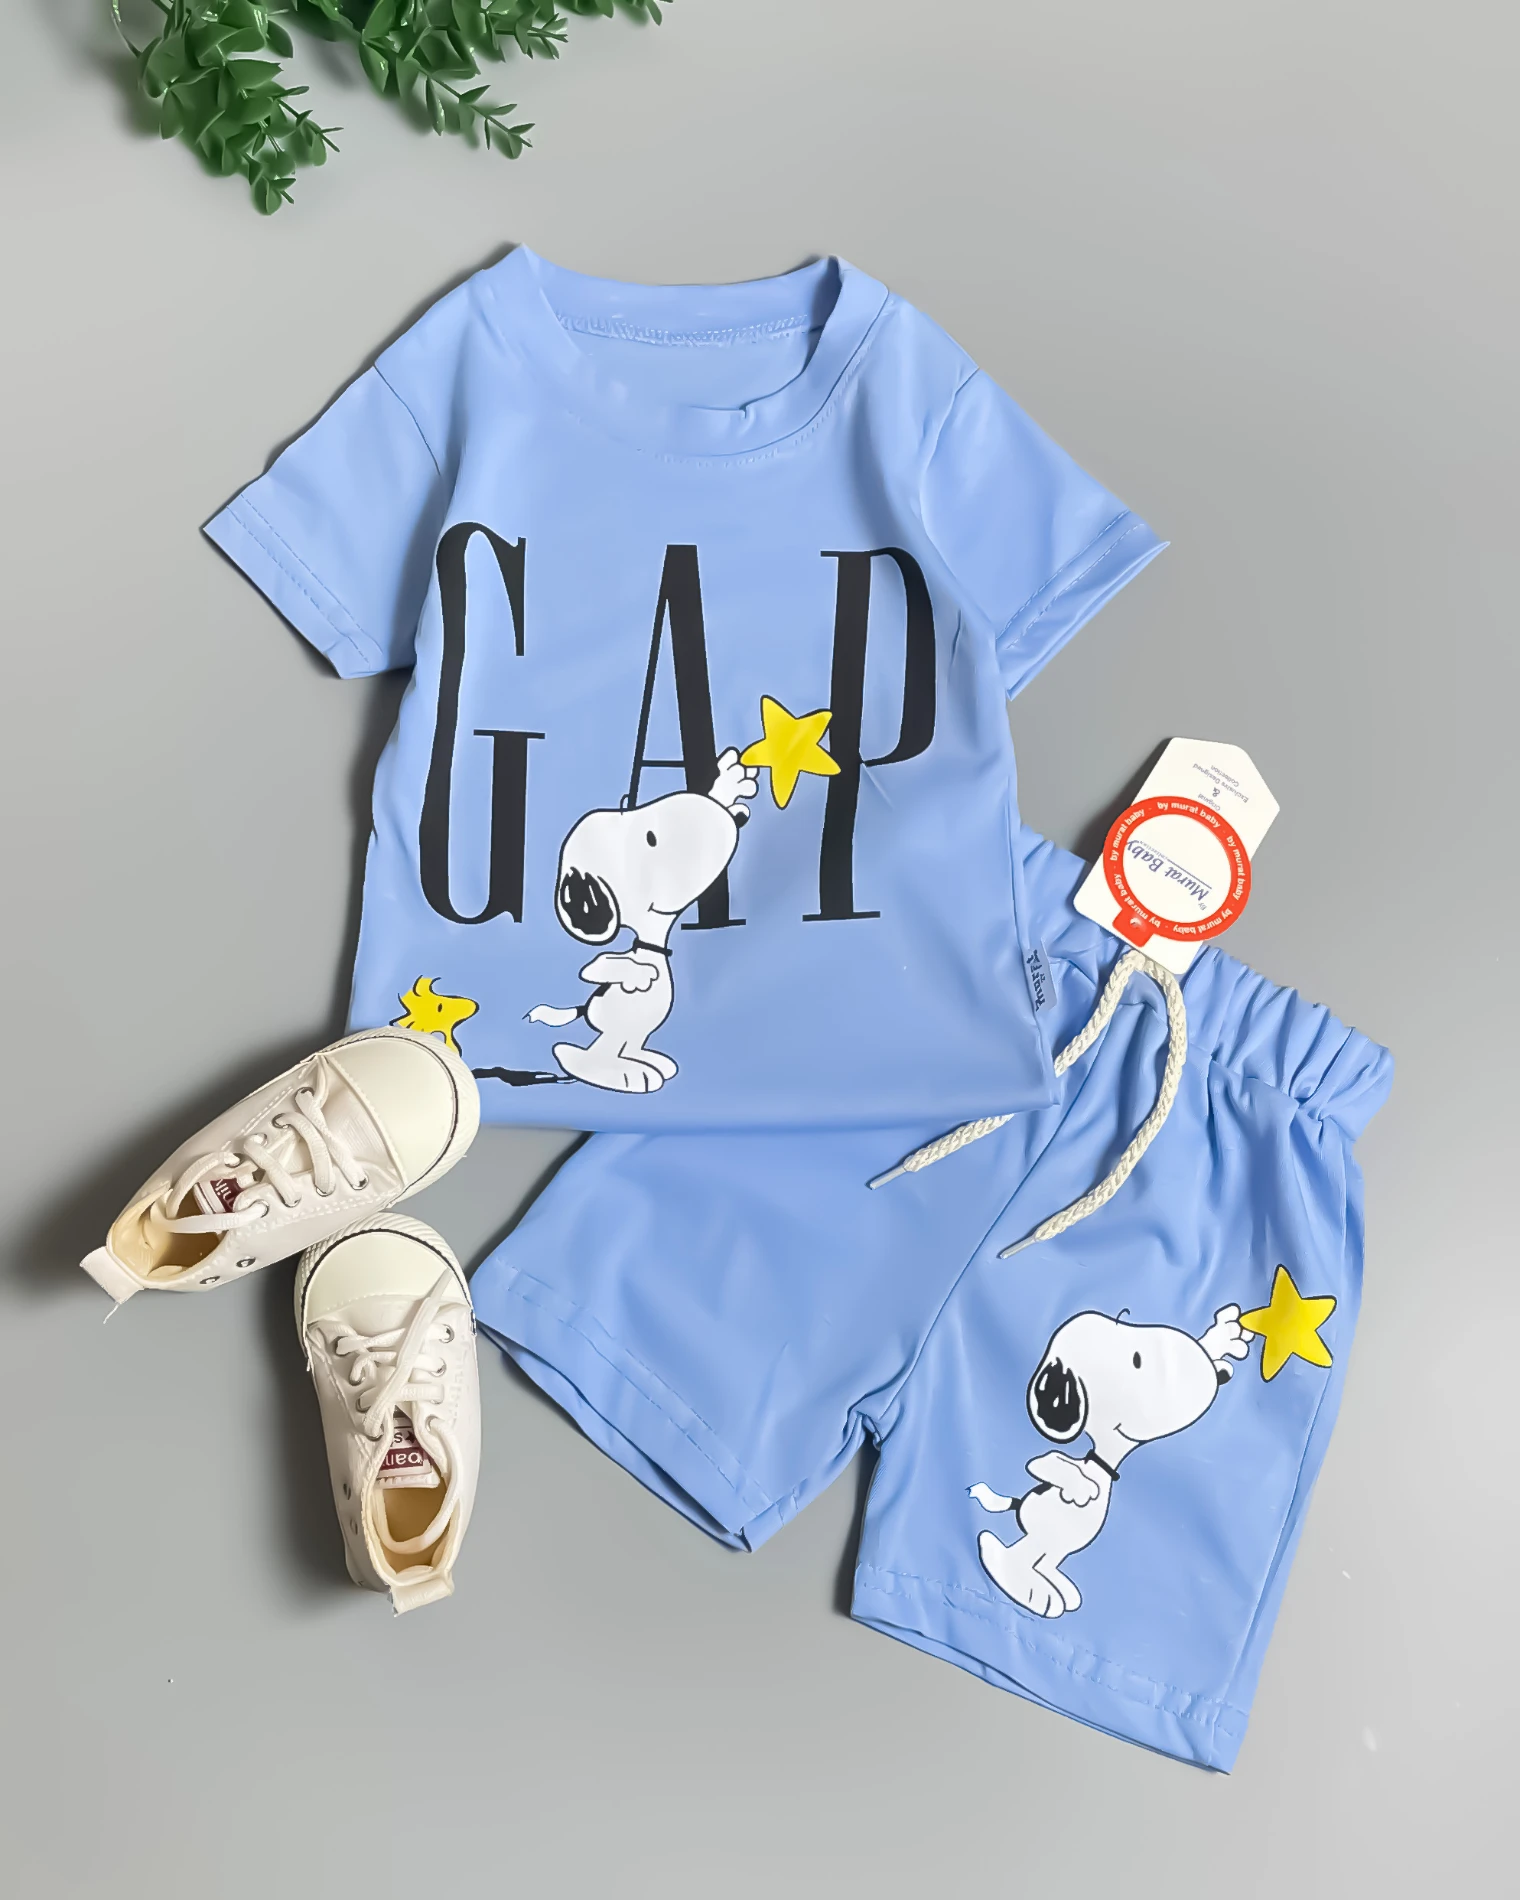 Miniapple Yazlık Büyük Yaş Gapp Snopp Baskılı 2’li Çocuk Takımı - MAVİ